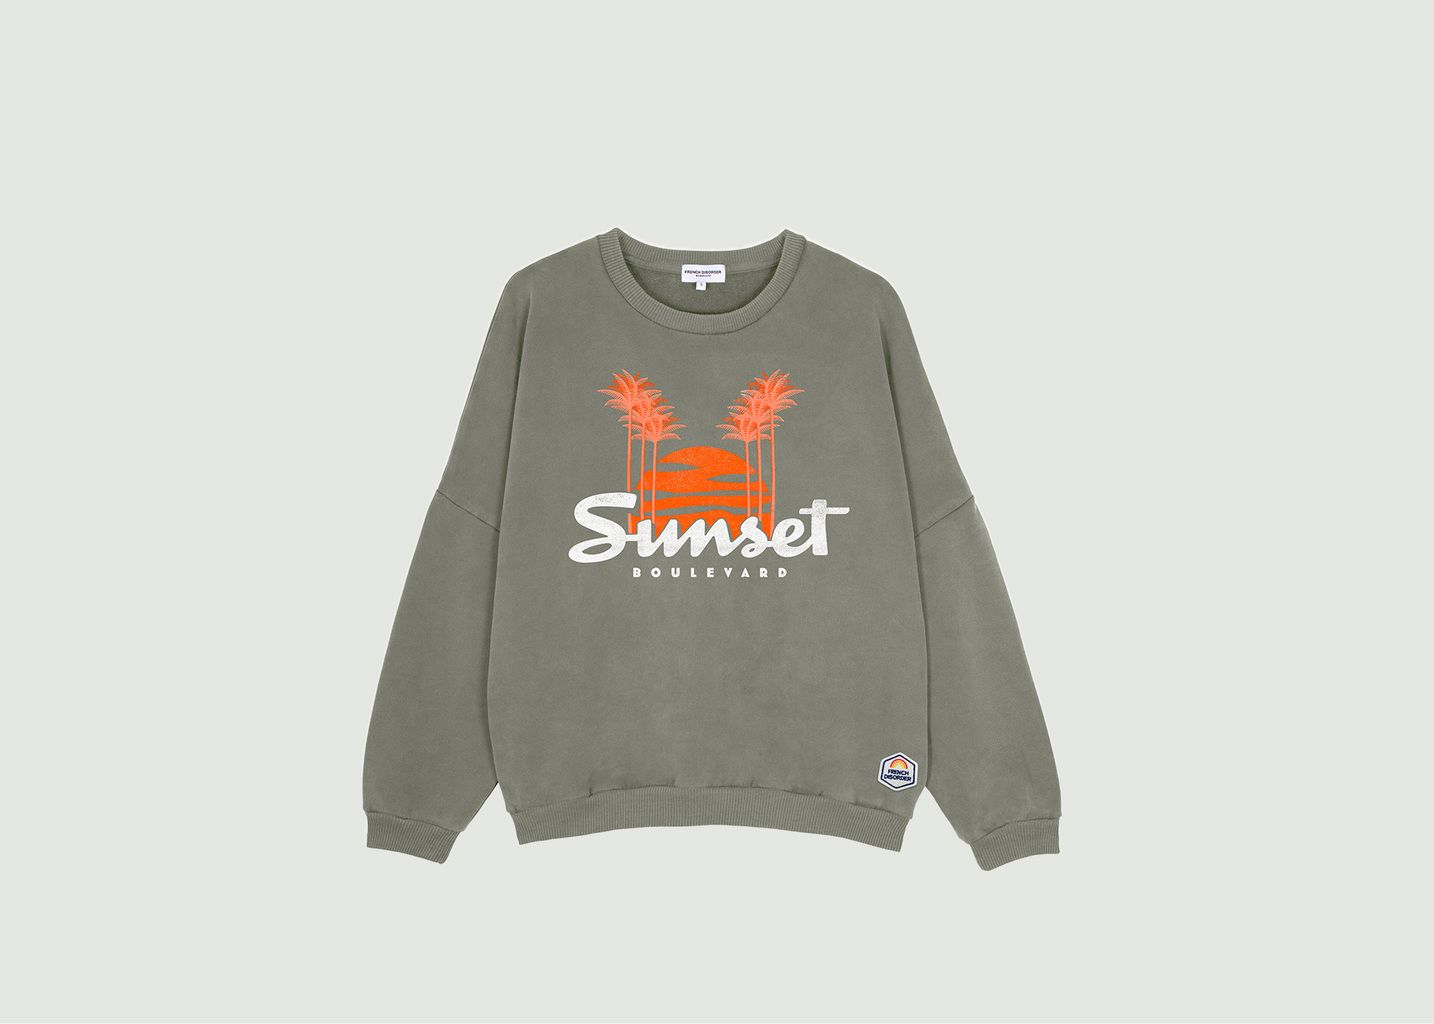 french-disorder-washed-sunset-sweatshirt